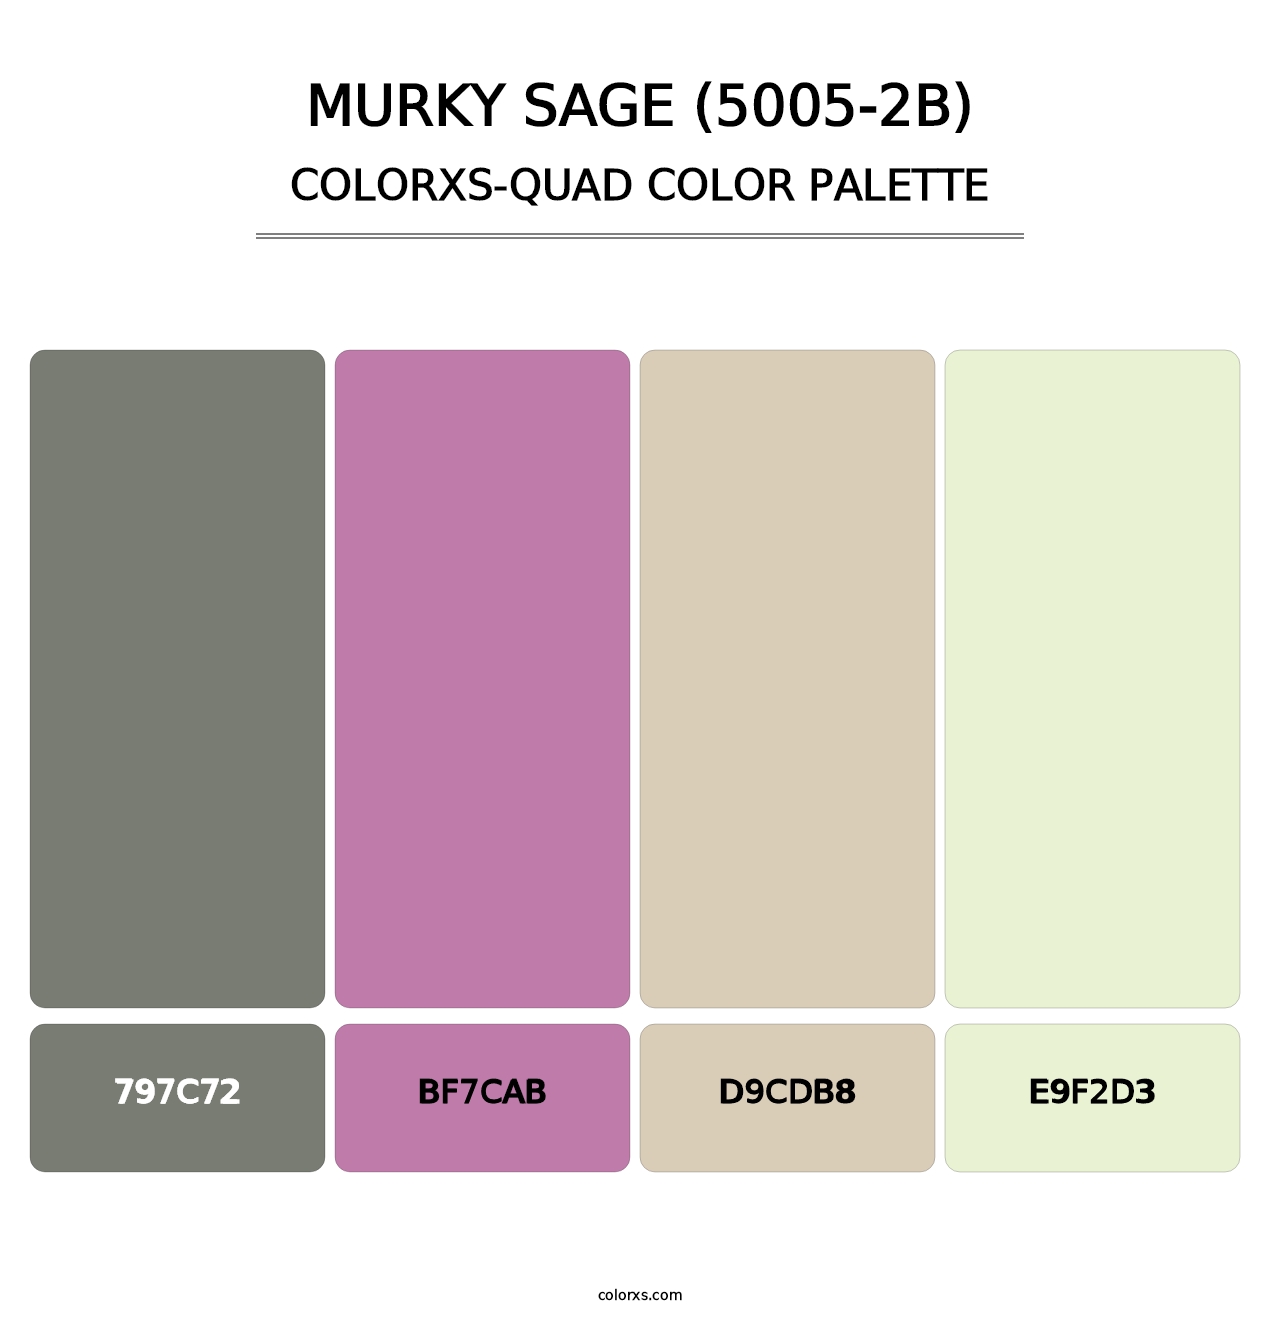 Murky Sage (5005-2B) - Colorxs Quad Palette